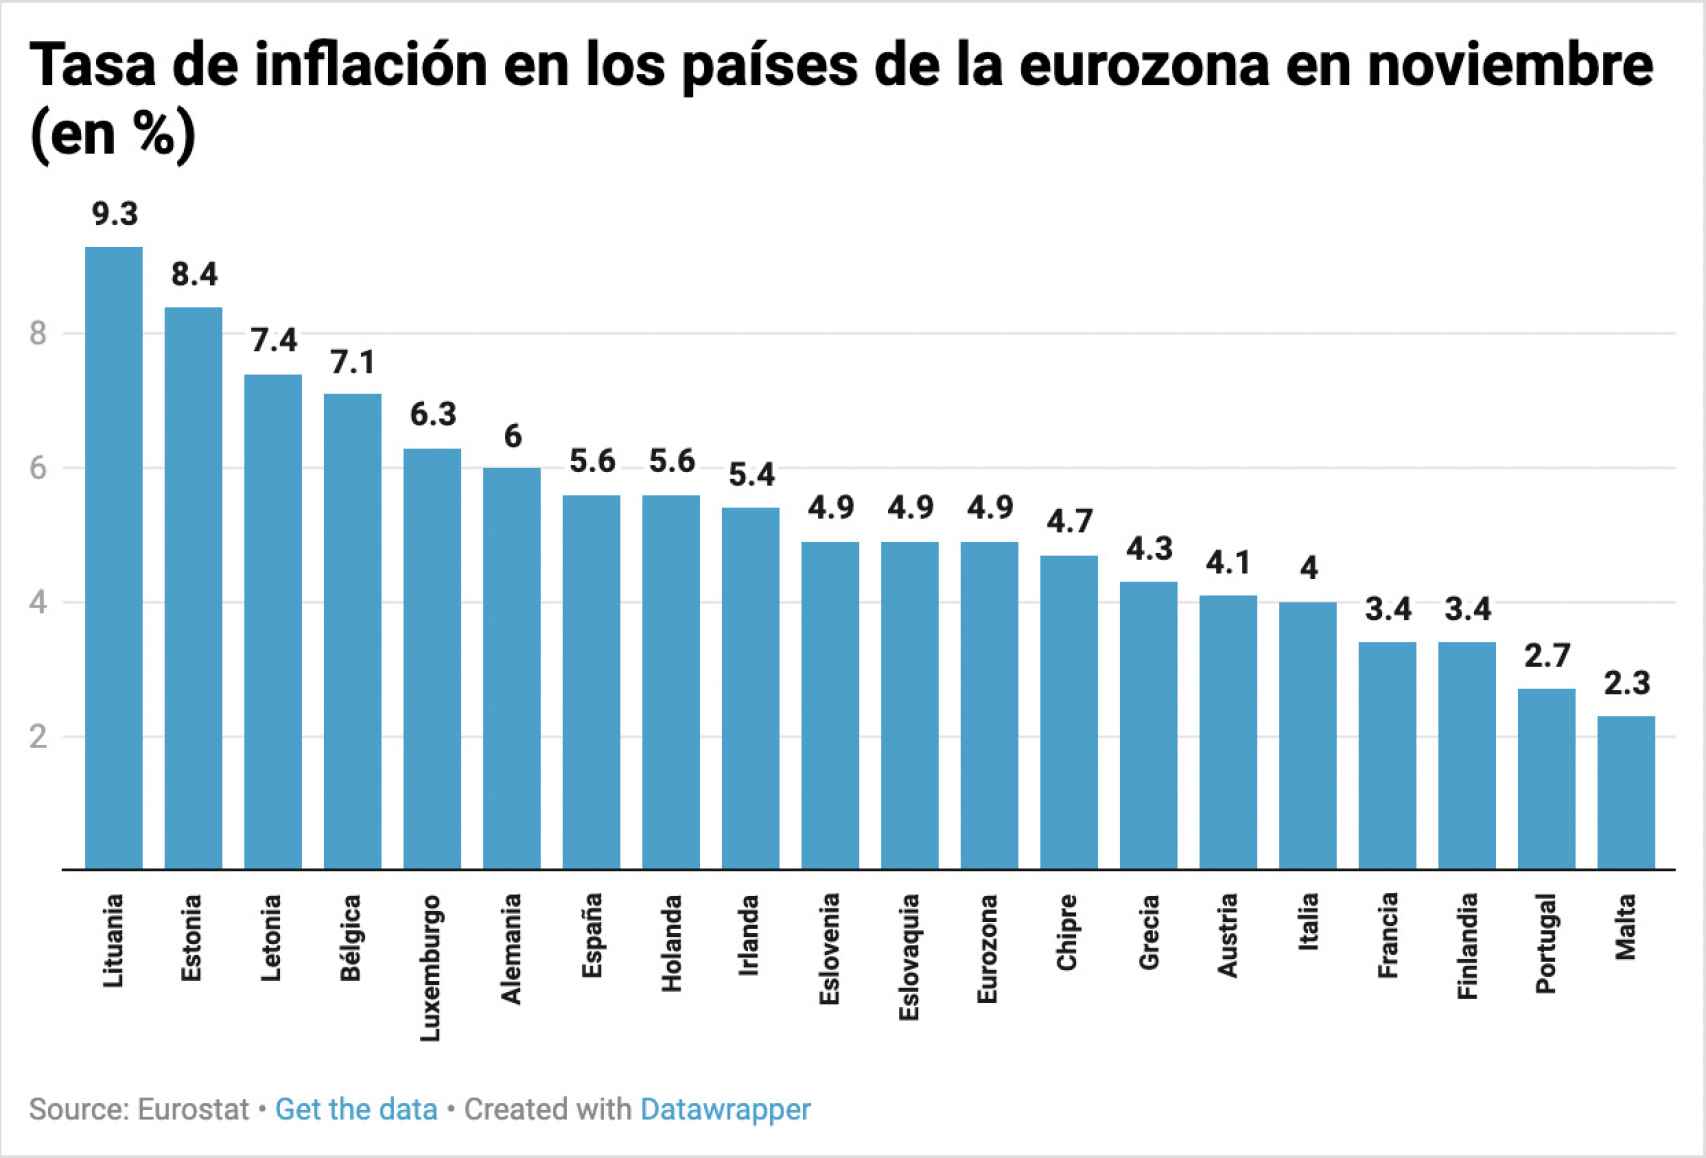 Tasa de inflación en noviembre en los países de la eurozona